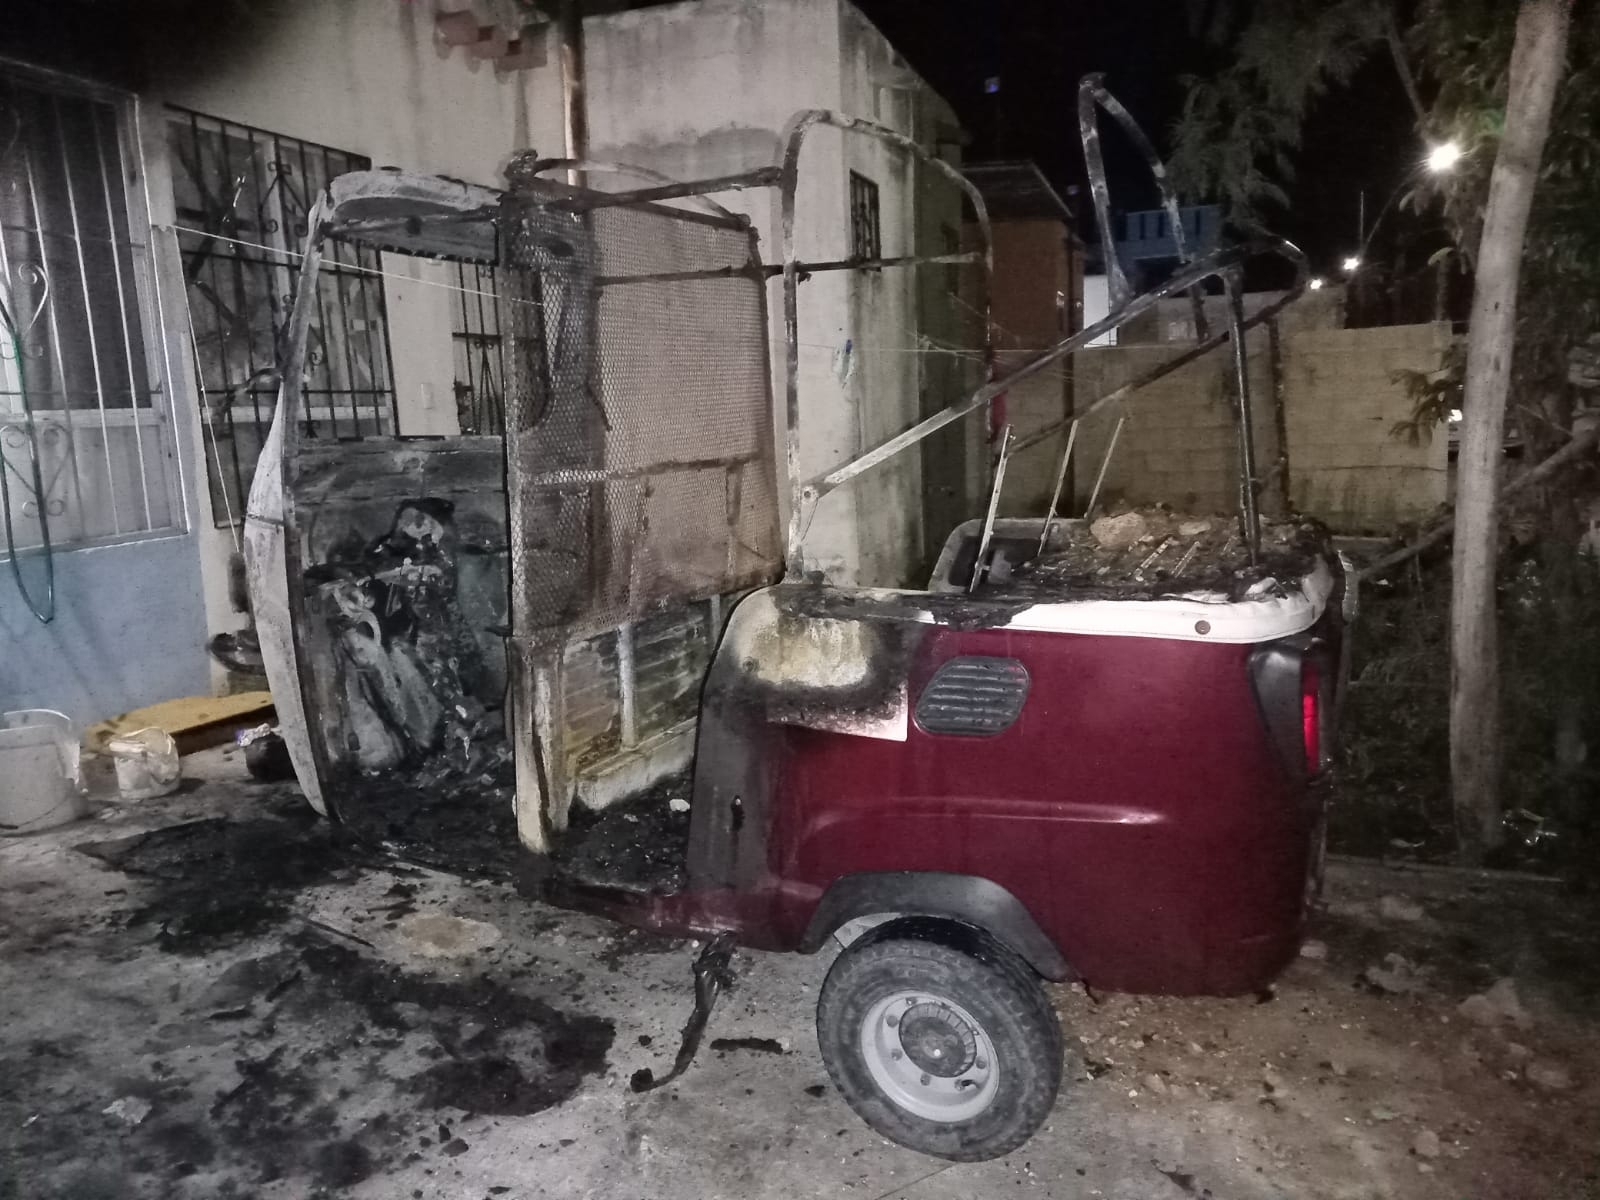 El mototaxi estaba estacionado dentro del patio de una vivienda del fraccionamiento Villas del Mar, cuando fue incendiado